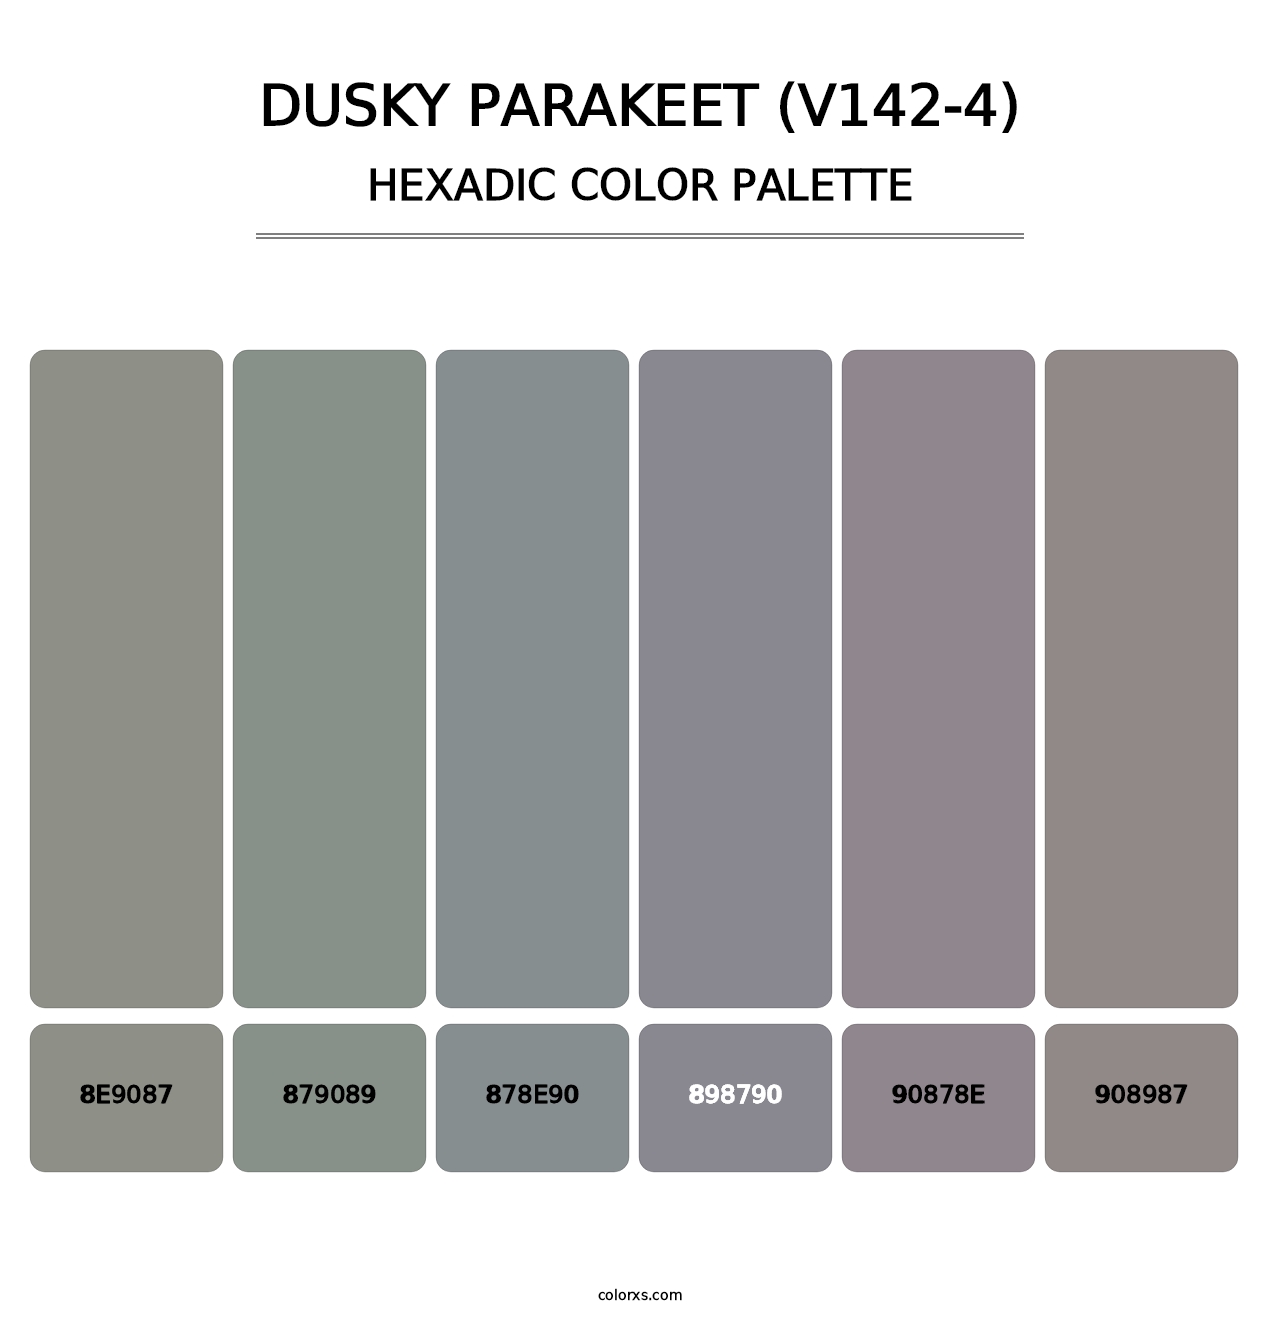 Dusky Parakeet (V142-4) - Hexadic Color Palette